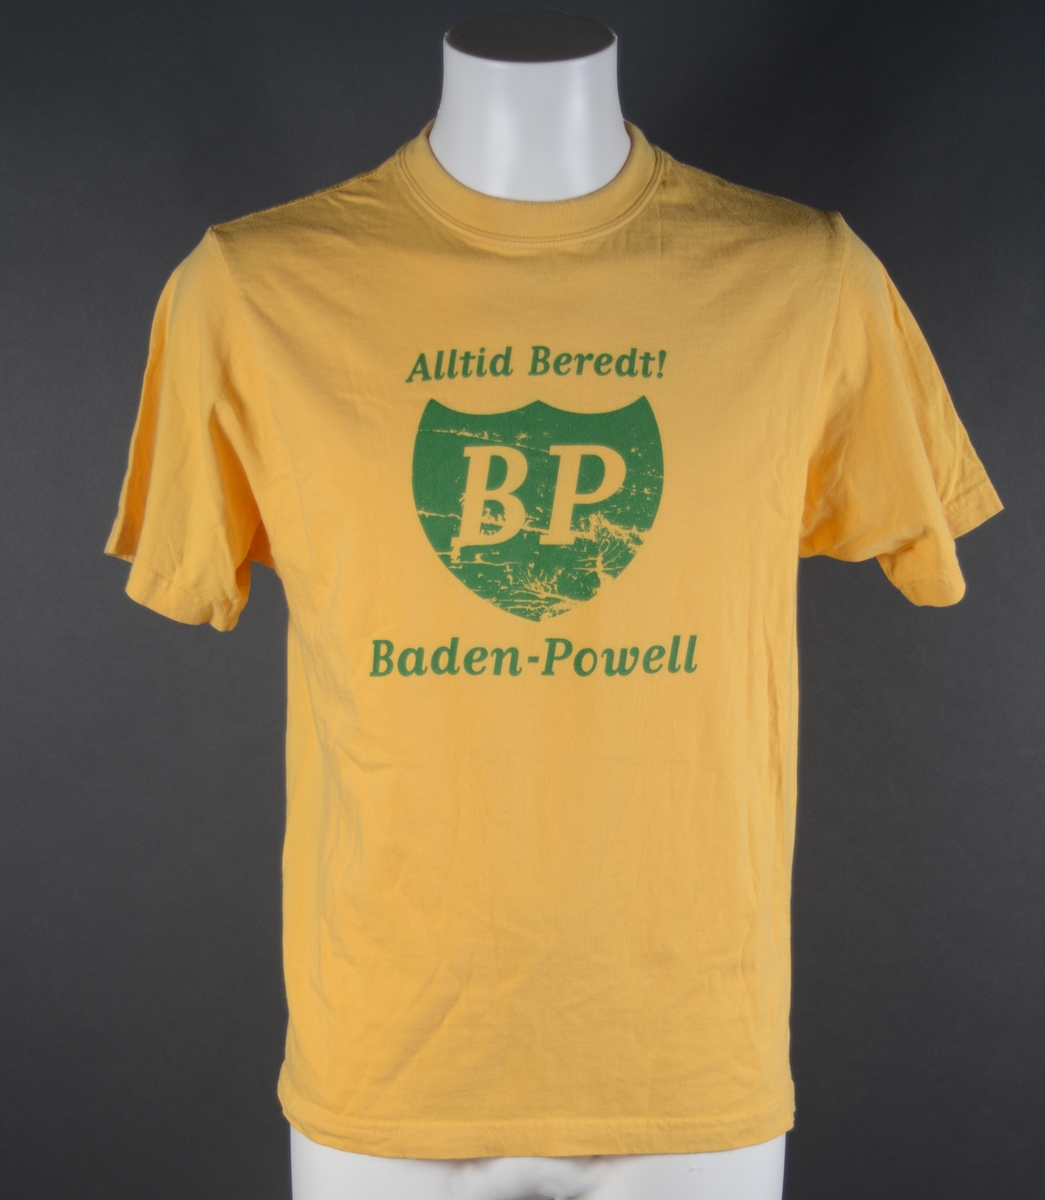 En T-skjorte med påtrykt tekst. Genseren er sydd av gult bomullsstoff som er elastisk. Den er i størrelse medium. Ermene er isydd. Halskanten er rund. Genseren har en søm i hver side, og nederst er det sydd opp en kant. I nakken er det sydd på en merkelapp, se "Påført tekst/merker". I front er det påtrykt dekor. I midten er logoen til BP (British Petroleum). Over står det "Vær beredt" som på engelsk er "Be Prepared" = BP. Under står det Baden-Powell som også passer i ordspillet BP. Dekoren er i grønt.